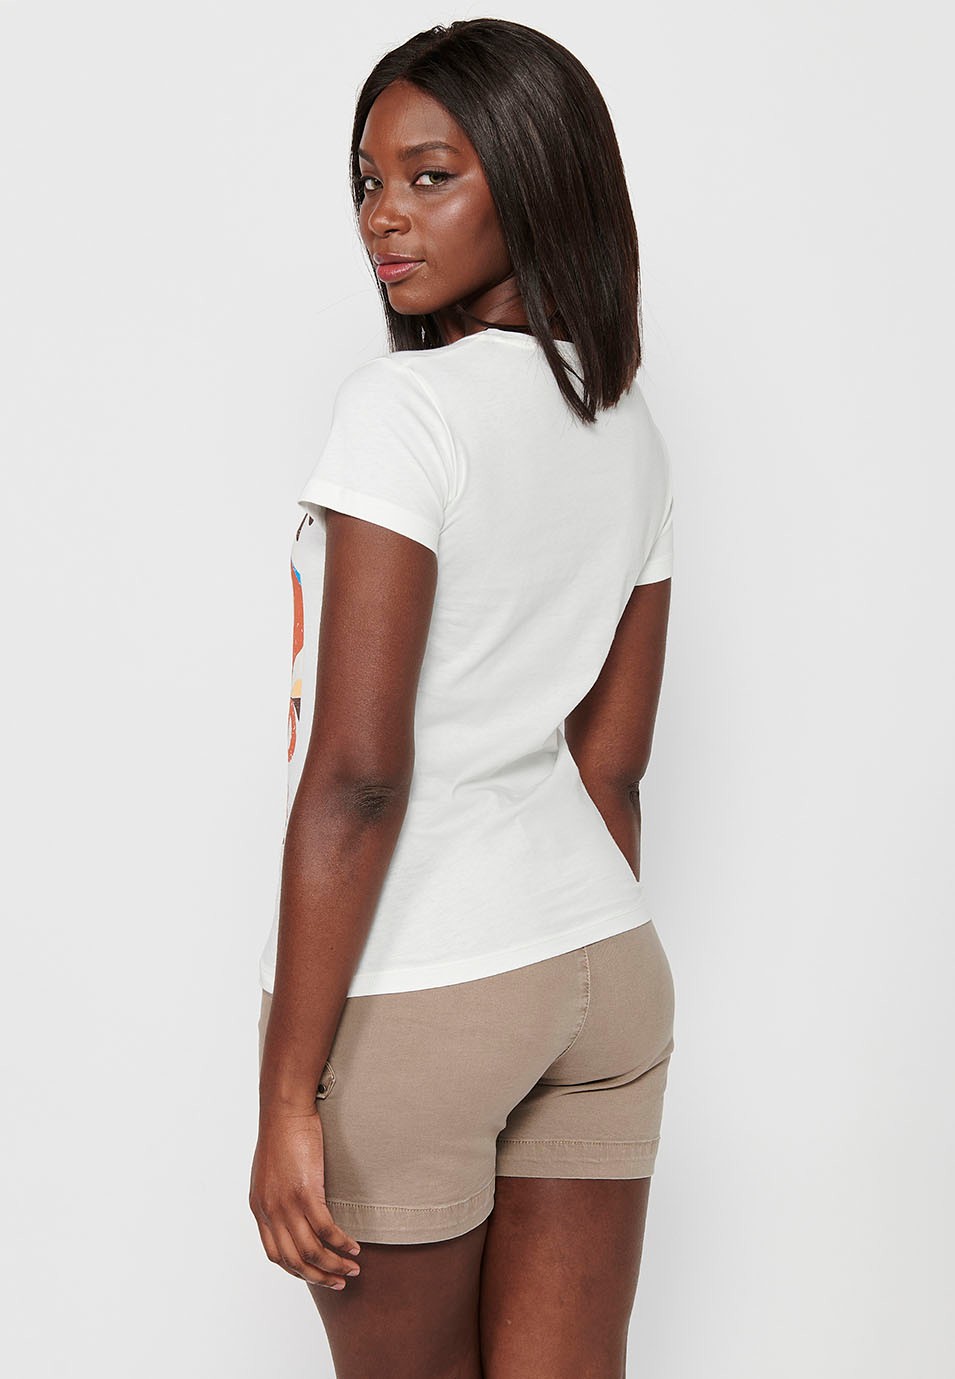 Damen-T-Shirt aus Baumwolle mit kurzen Ärmeln, Rundhalsausschnitt und ecrufarbenem Aufdruck auf der Vorderseite 1